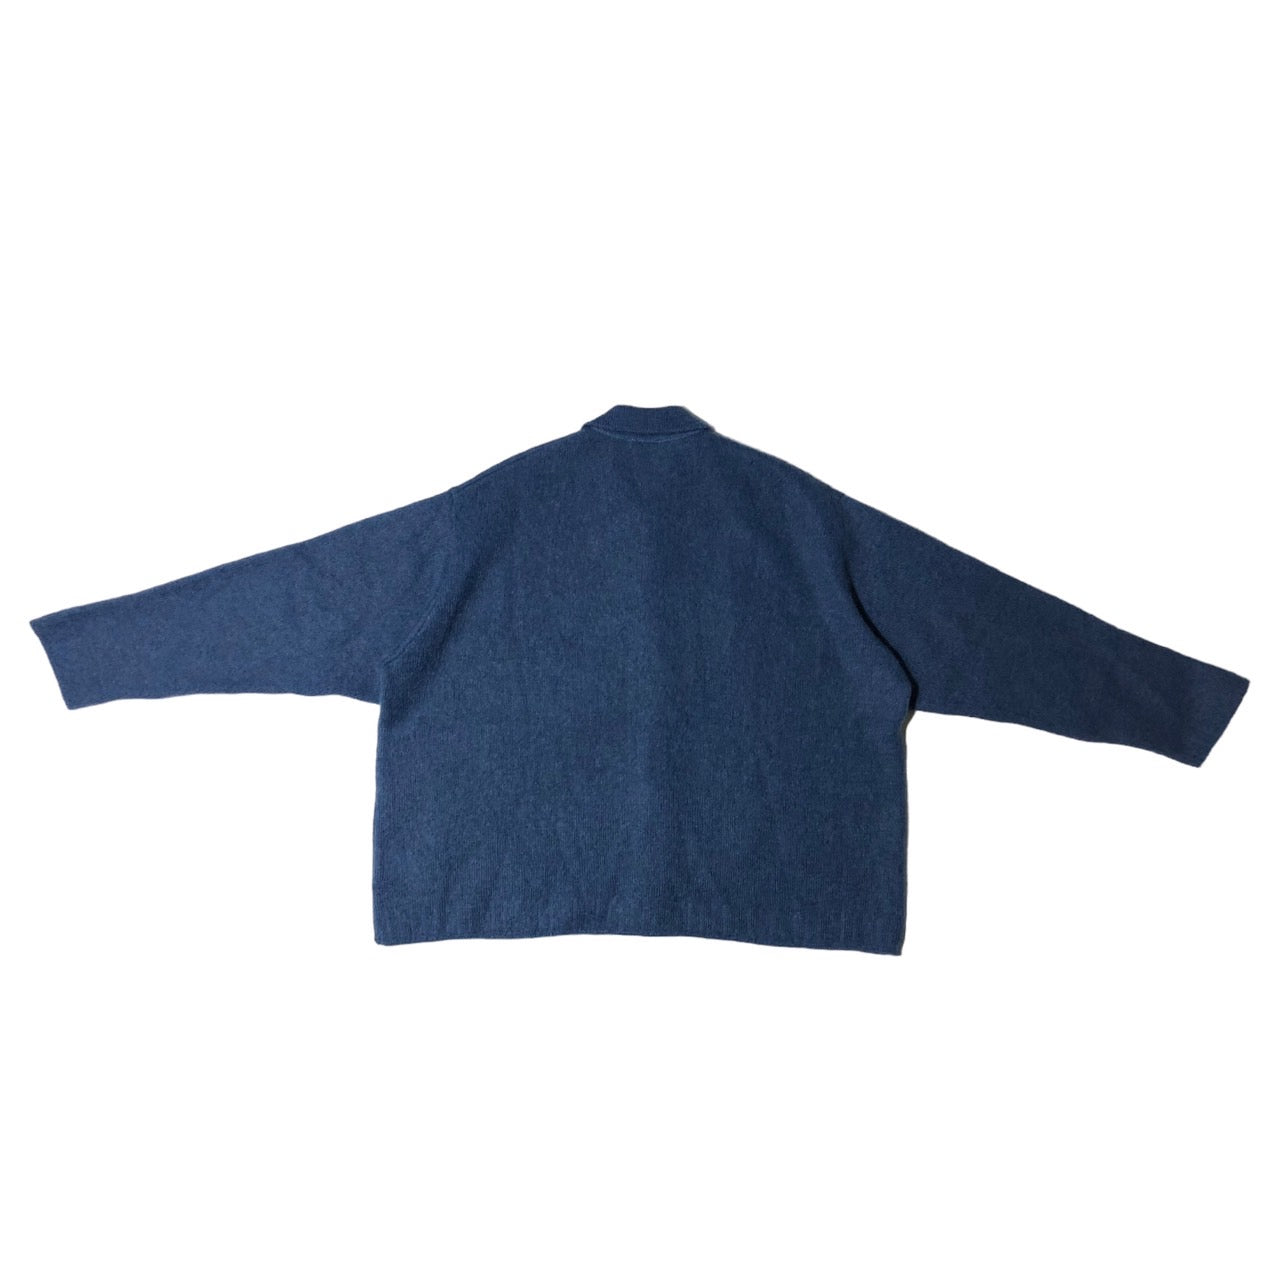 Blanc YM(ブランワイエム) 23AW kid mohair knit shirts/キッドモヘアニットシャツ bl-23a-kmks SIZE S サックスブルー 完売品